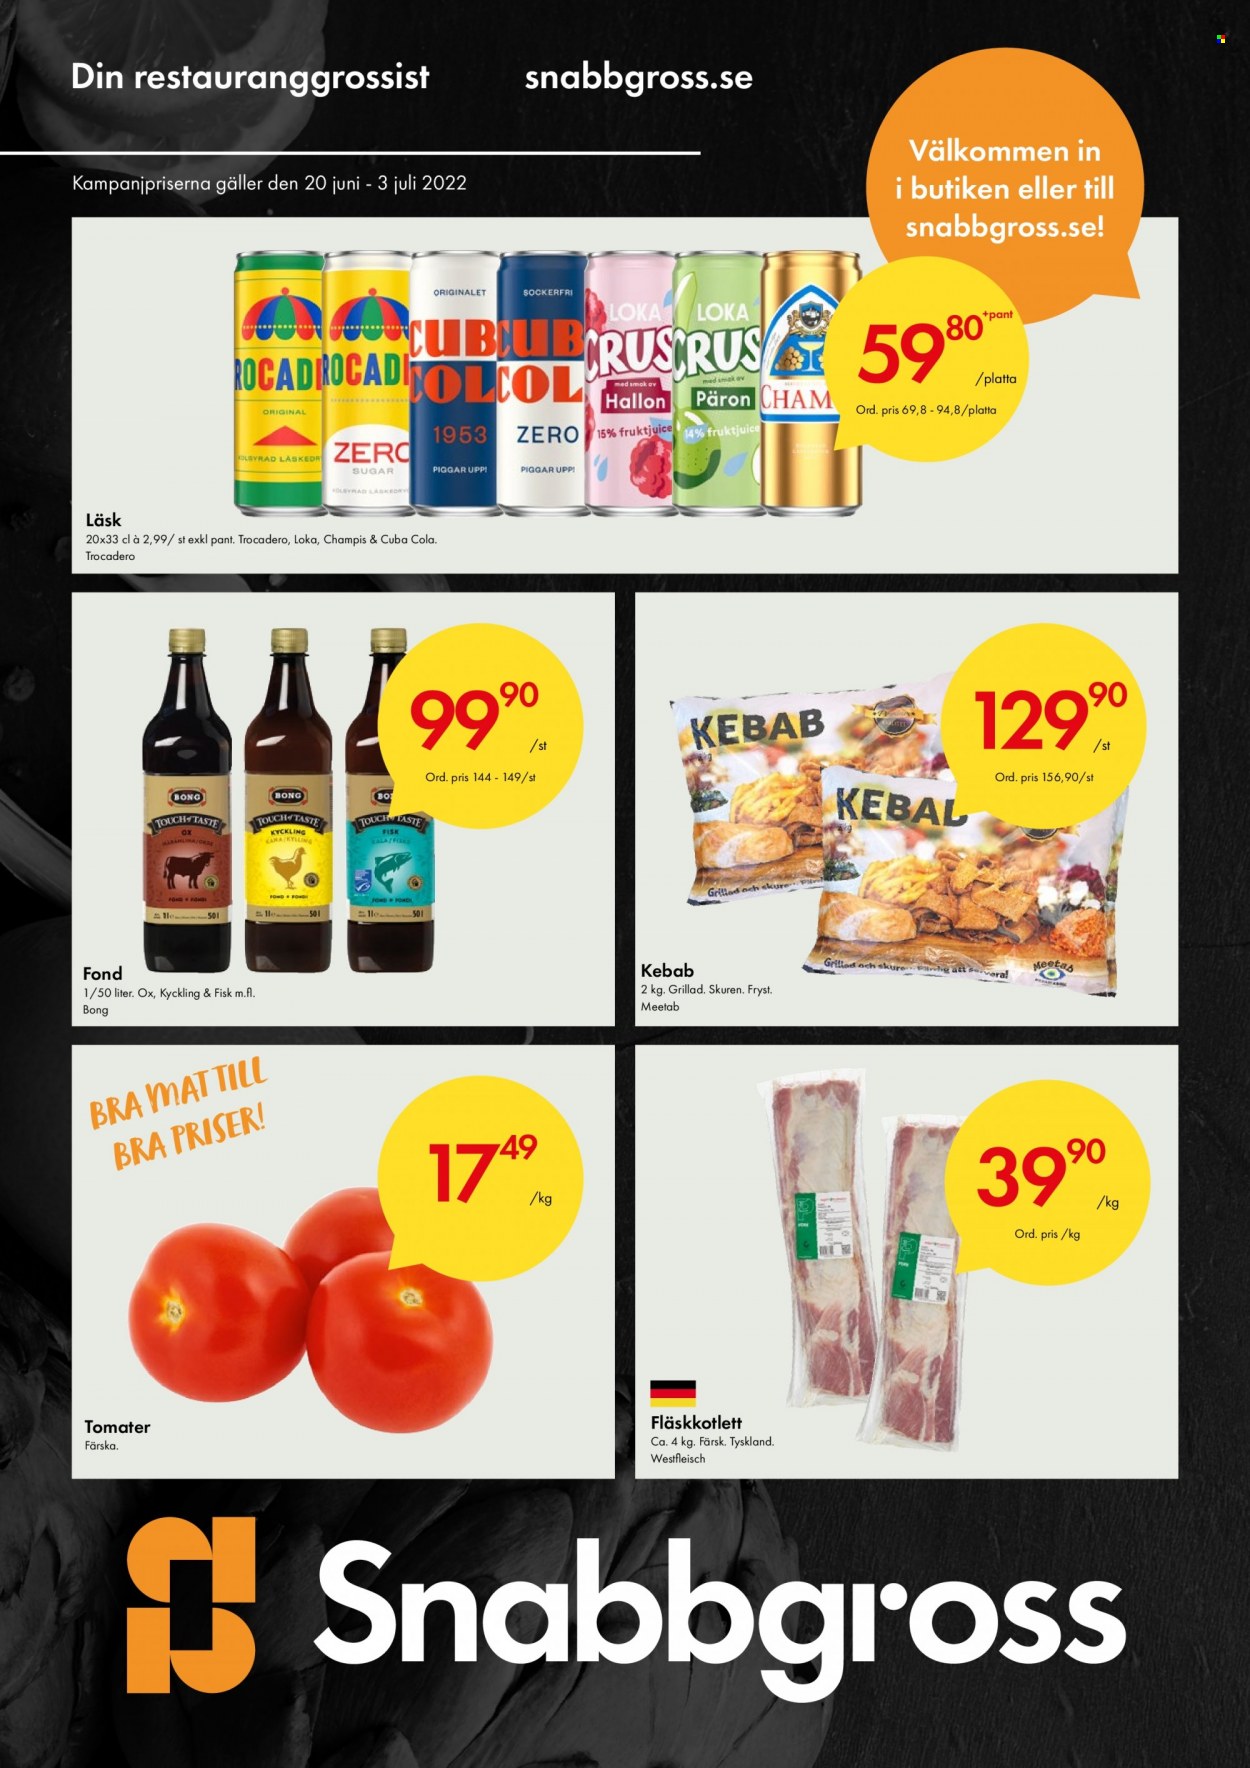 Axfood Snabbgross reklamblad - 20/6 2022 - 3/7 2022 - varor från reklamblad - päron, fläskkotlett, fläskkött, tomater, kebab, Trocadero, Cuba Cola. Sida 1.